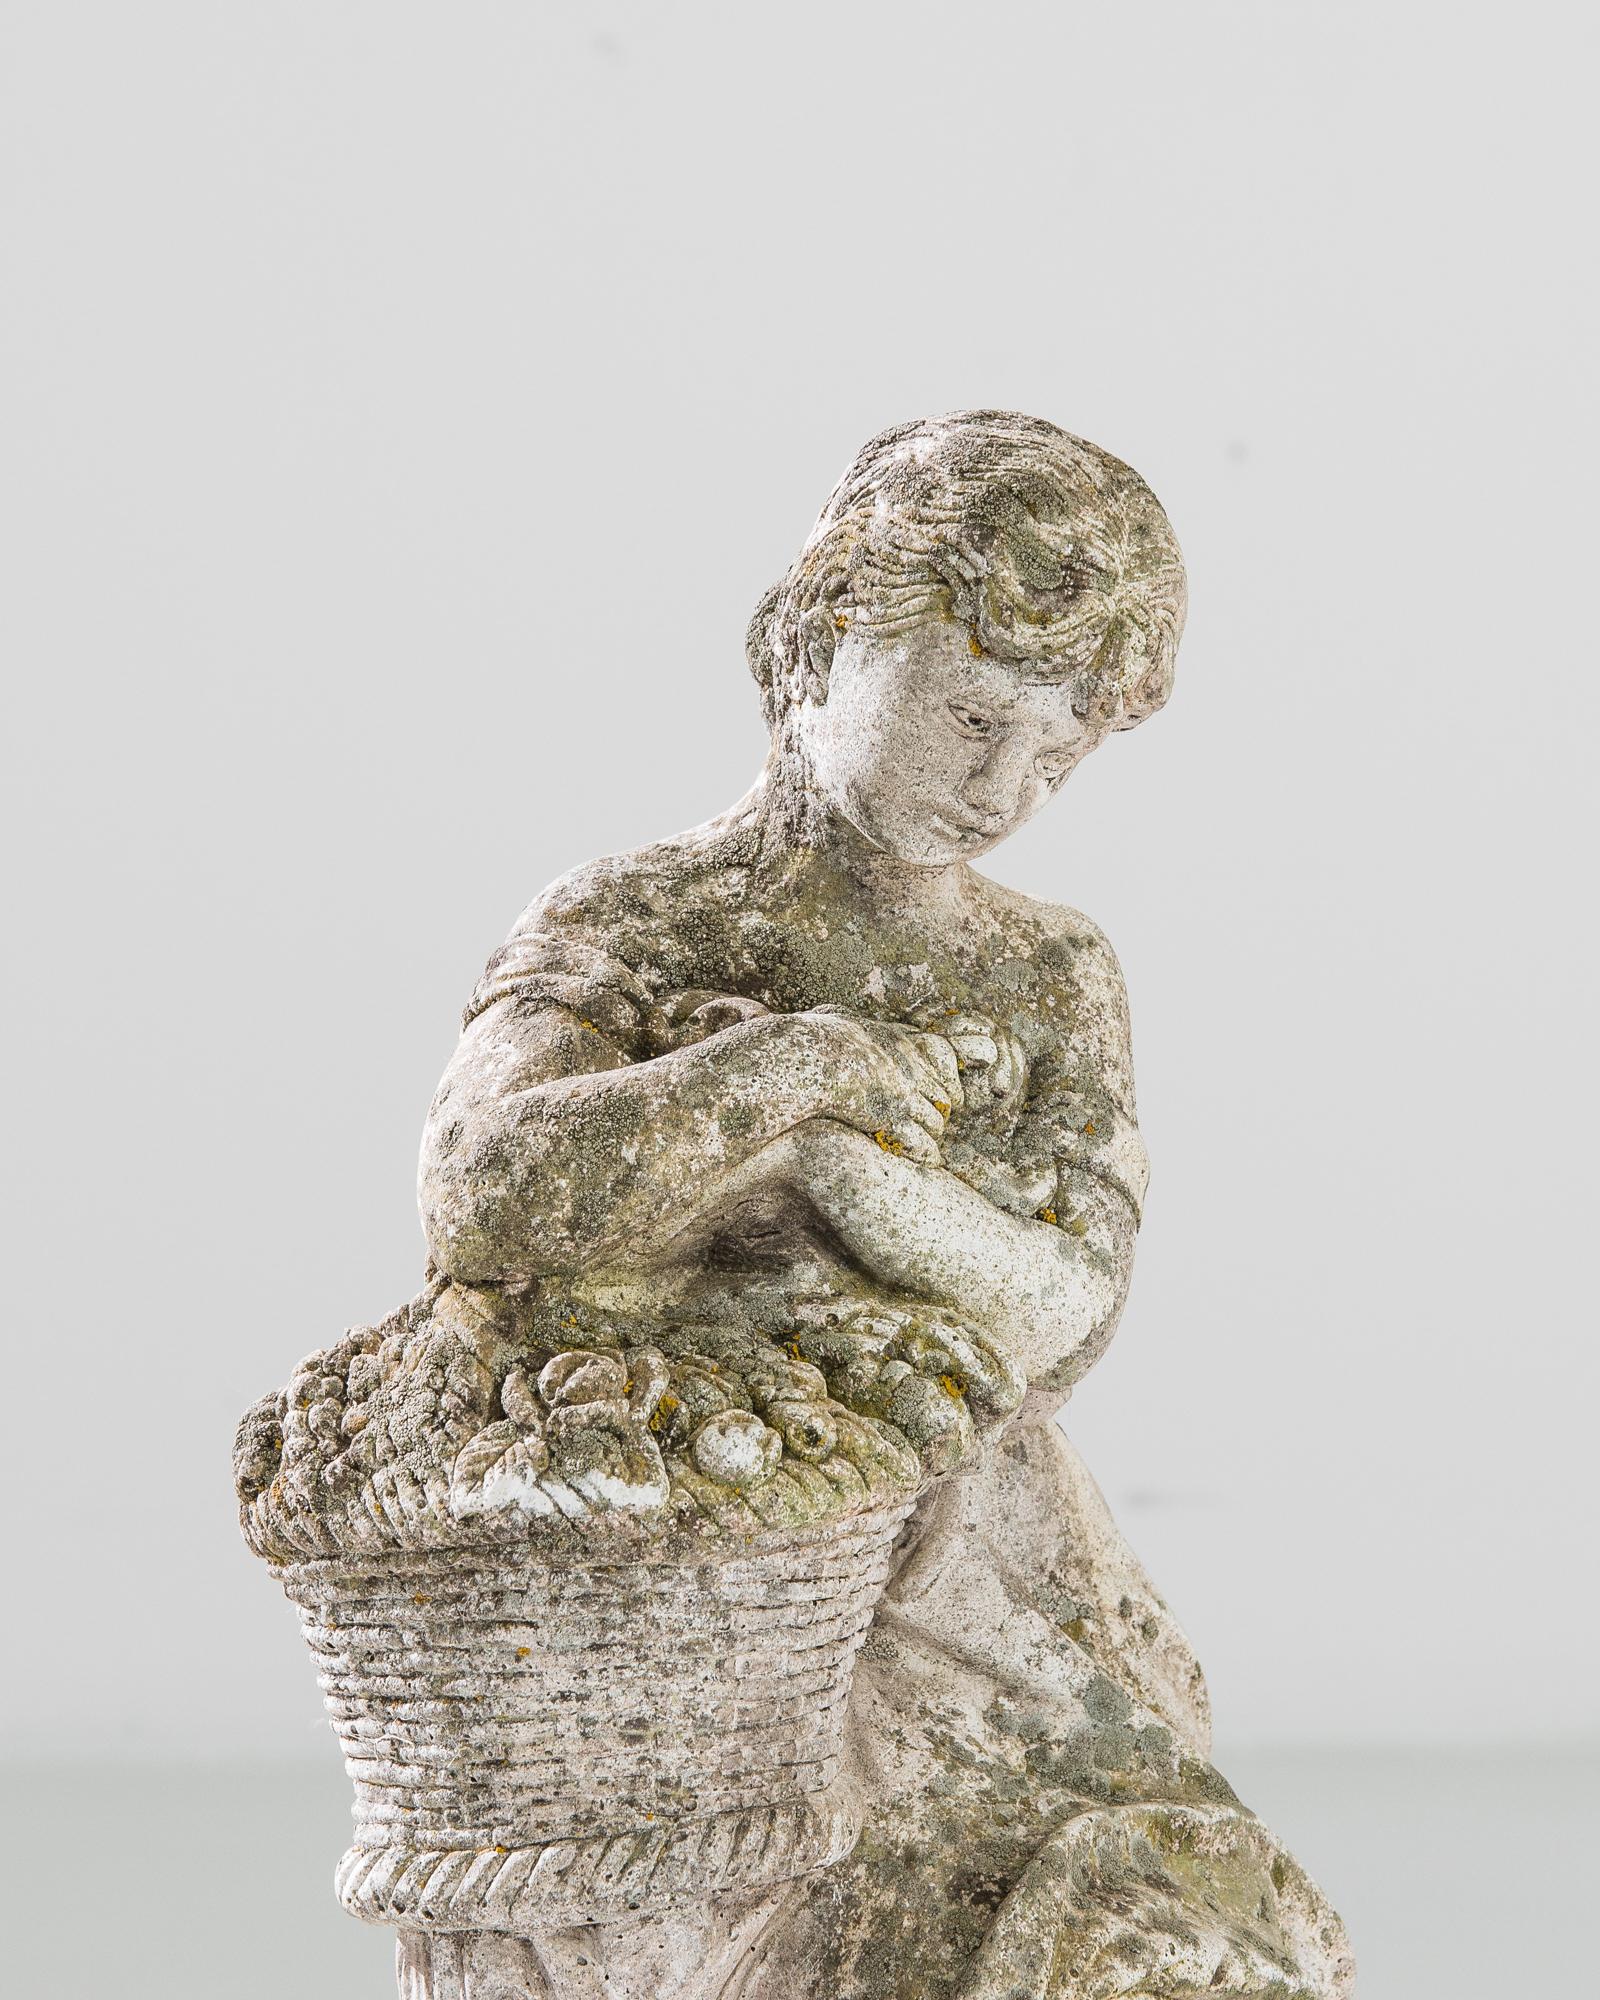 Eine Betonskulptur für den Garten aus Frankreich, hergestellt um 1960. Die auf einem runden Sockel stehende Skulptur zeigt eine barfuß gehende junge Frau in einem Kleid, die einen Korb mit frischem Obst und Gemüse trägt und sich auf einem Baumstumpf